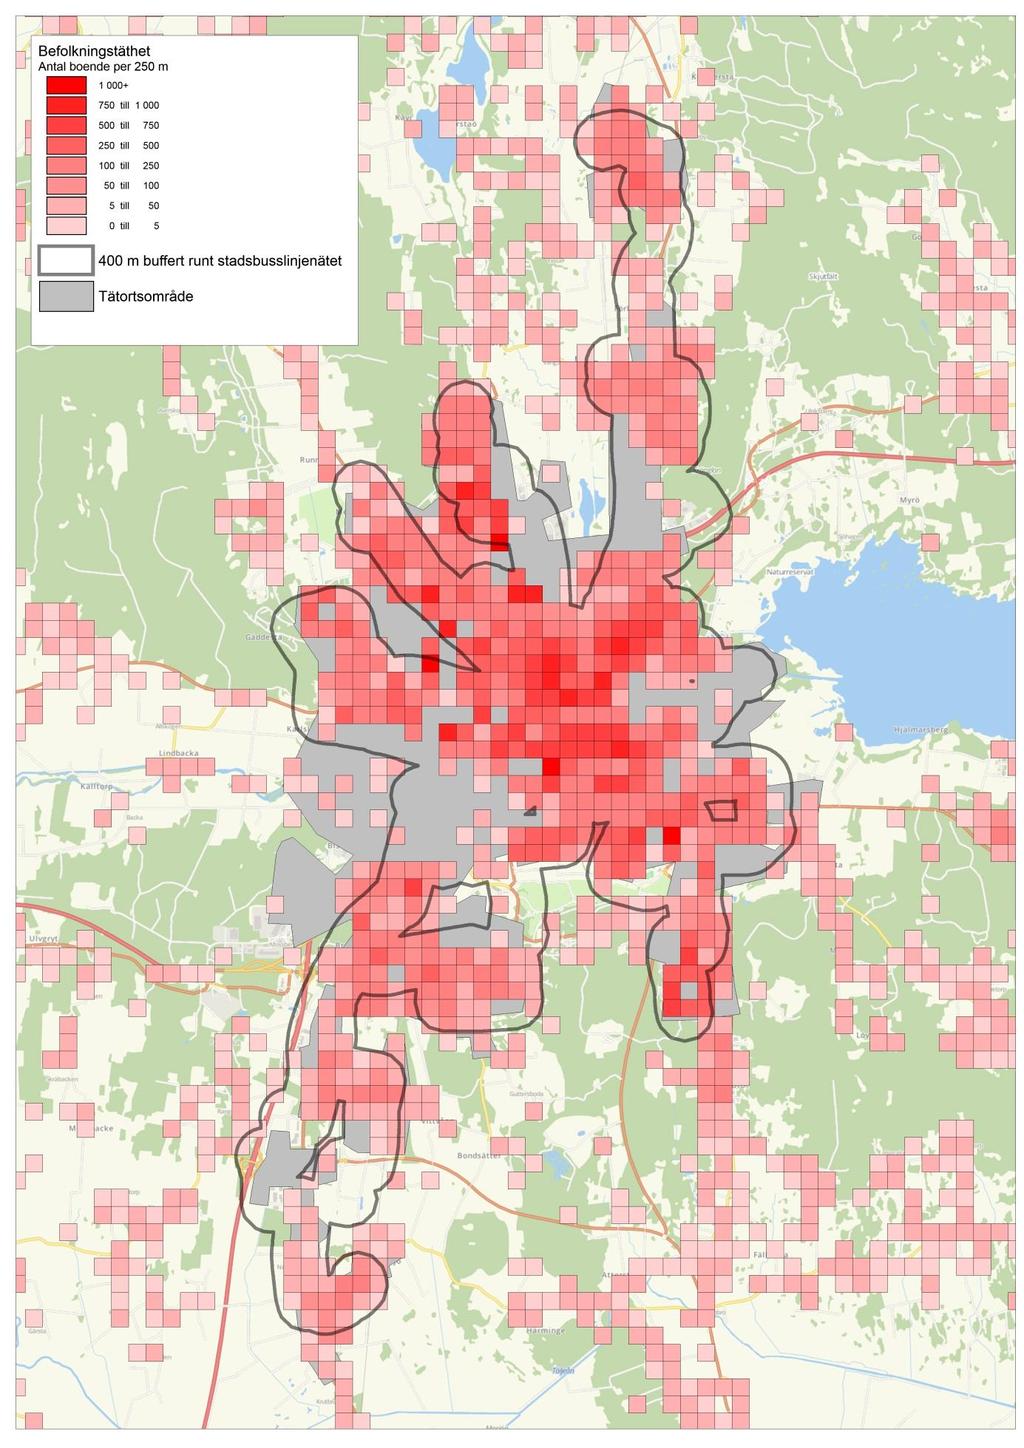 Karta 2: Tätortsområden, befolkningstäthet och 400m radie kring stadsbusslinjenätet.